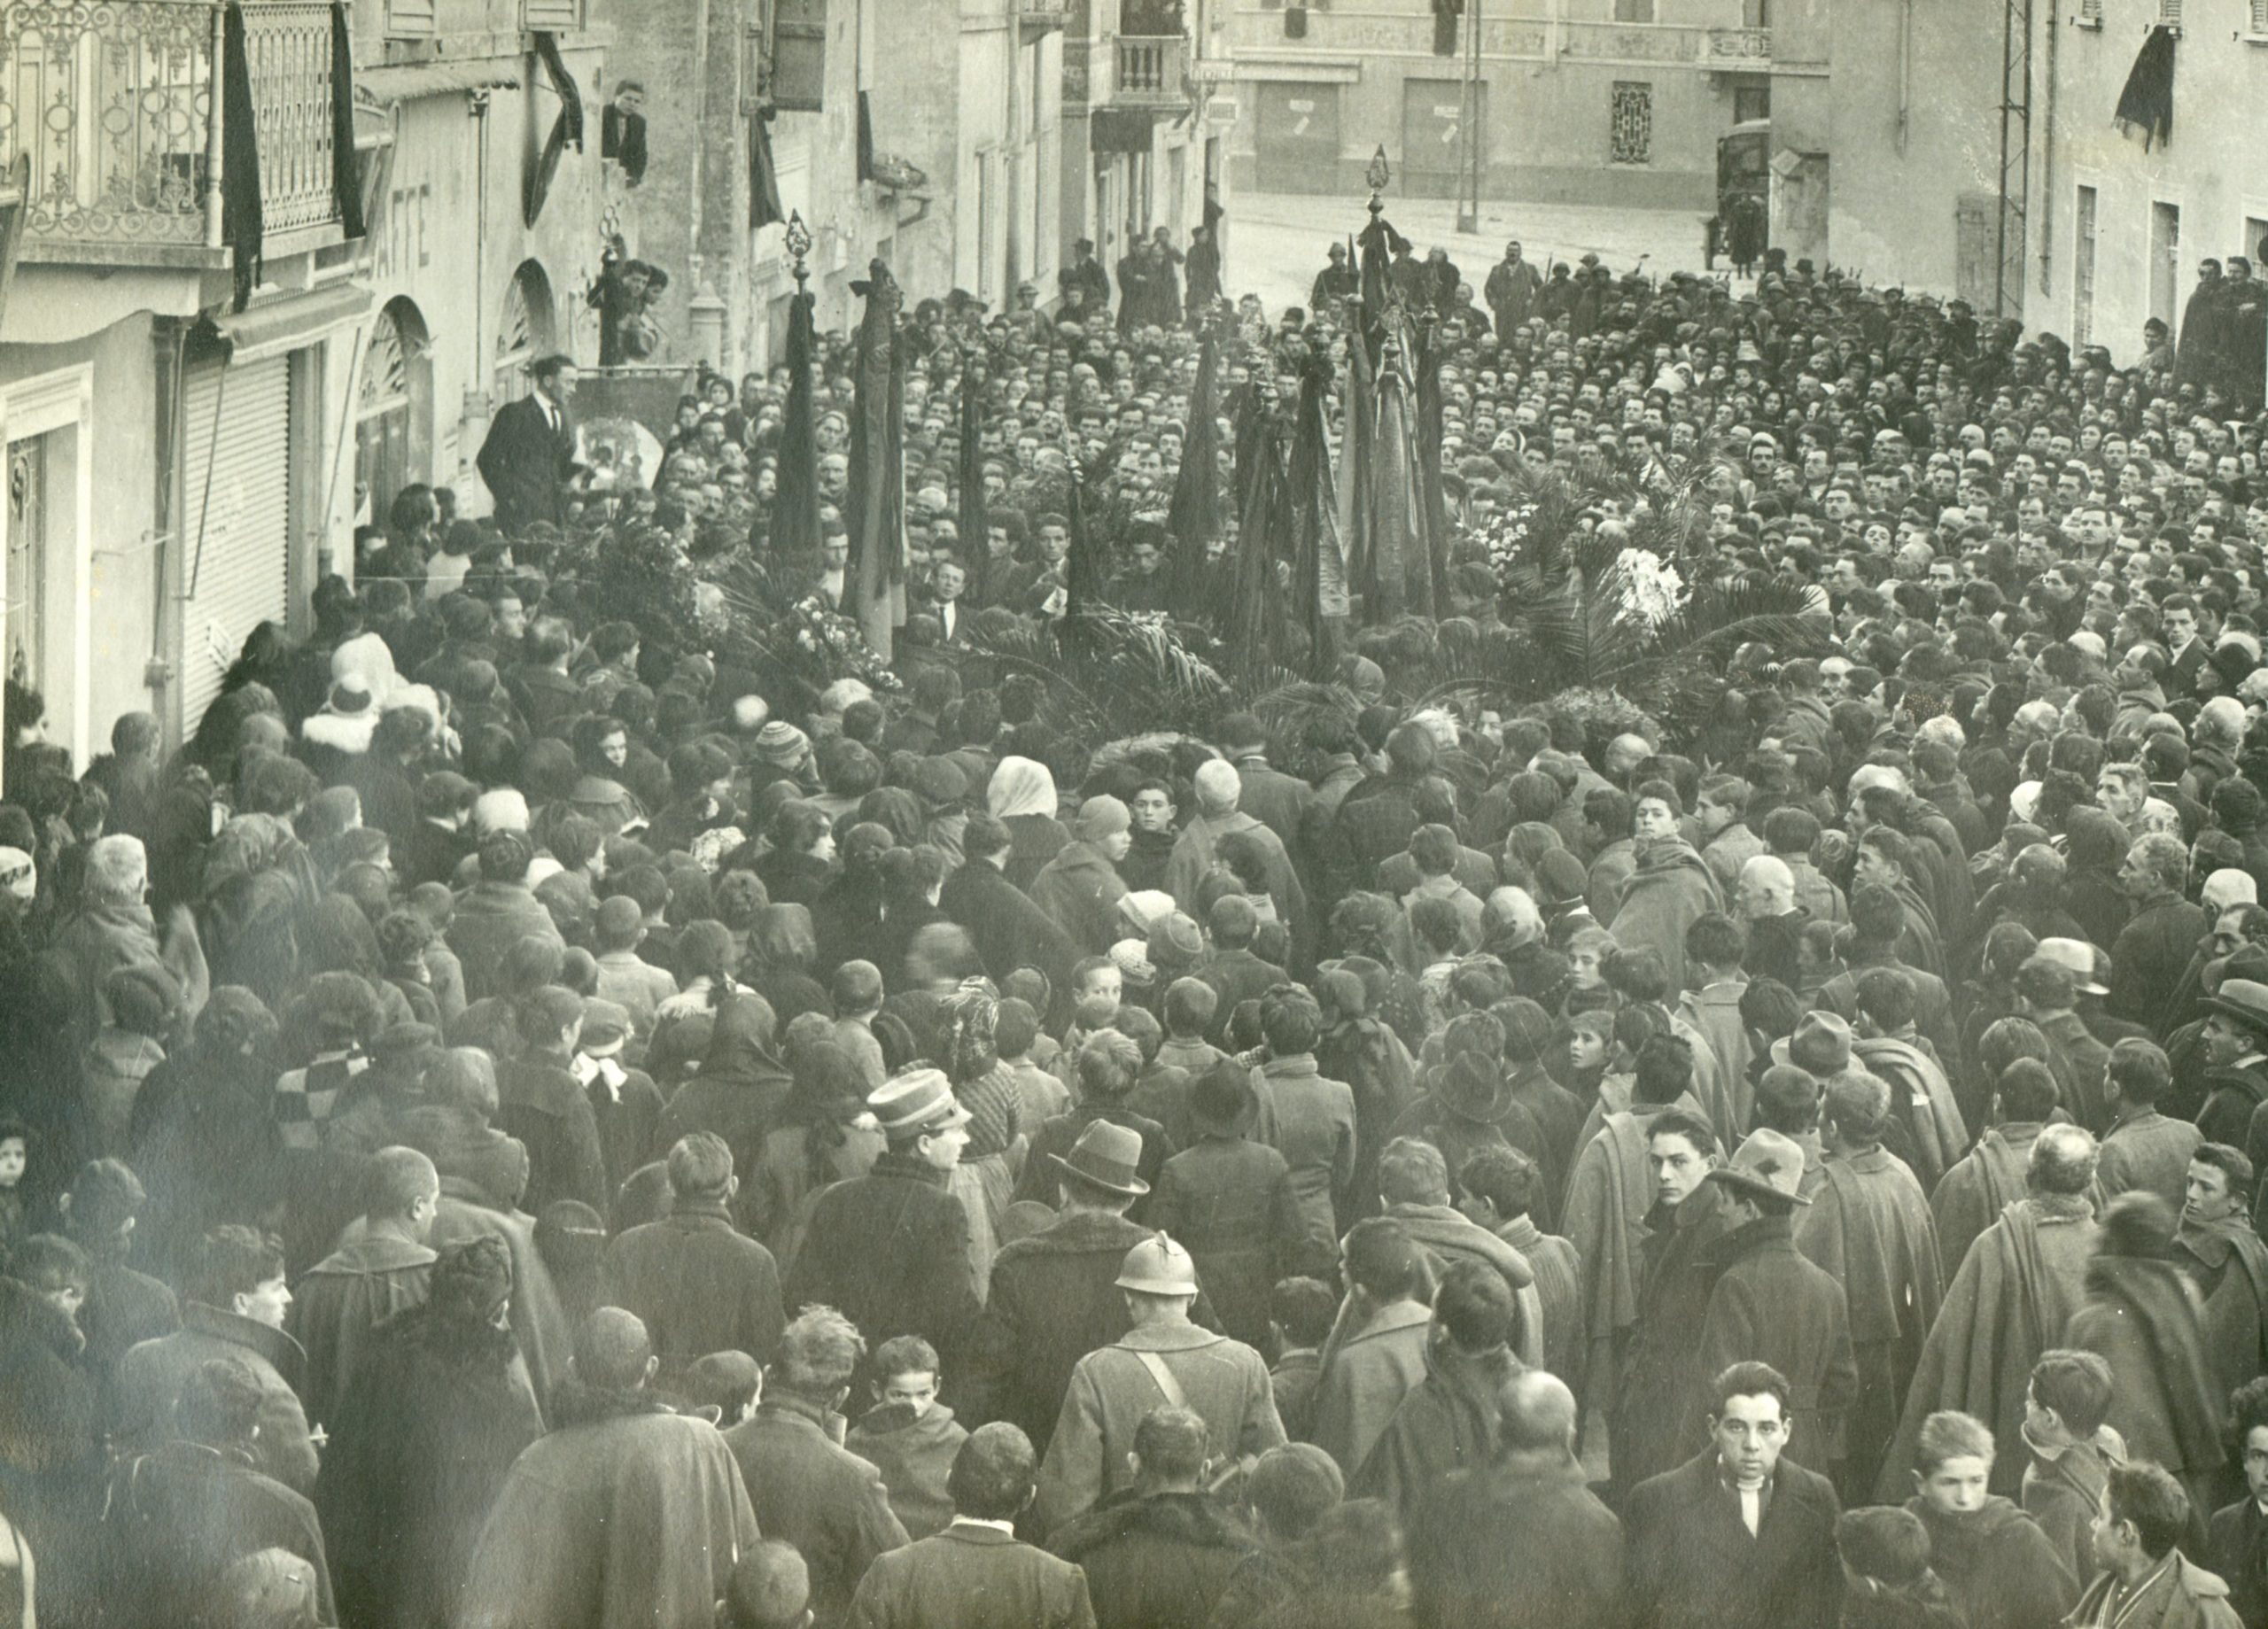 Collecchio (Parma), 13 dicembre 1921. Funerali di Alfredo Avanzini ucciso dai fascisti l'11 dicembre 1921. Oratore Enrico Montanini. Istituto Storico Parma.